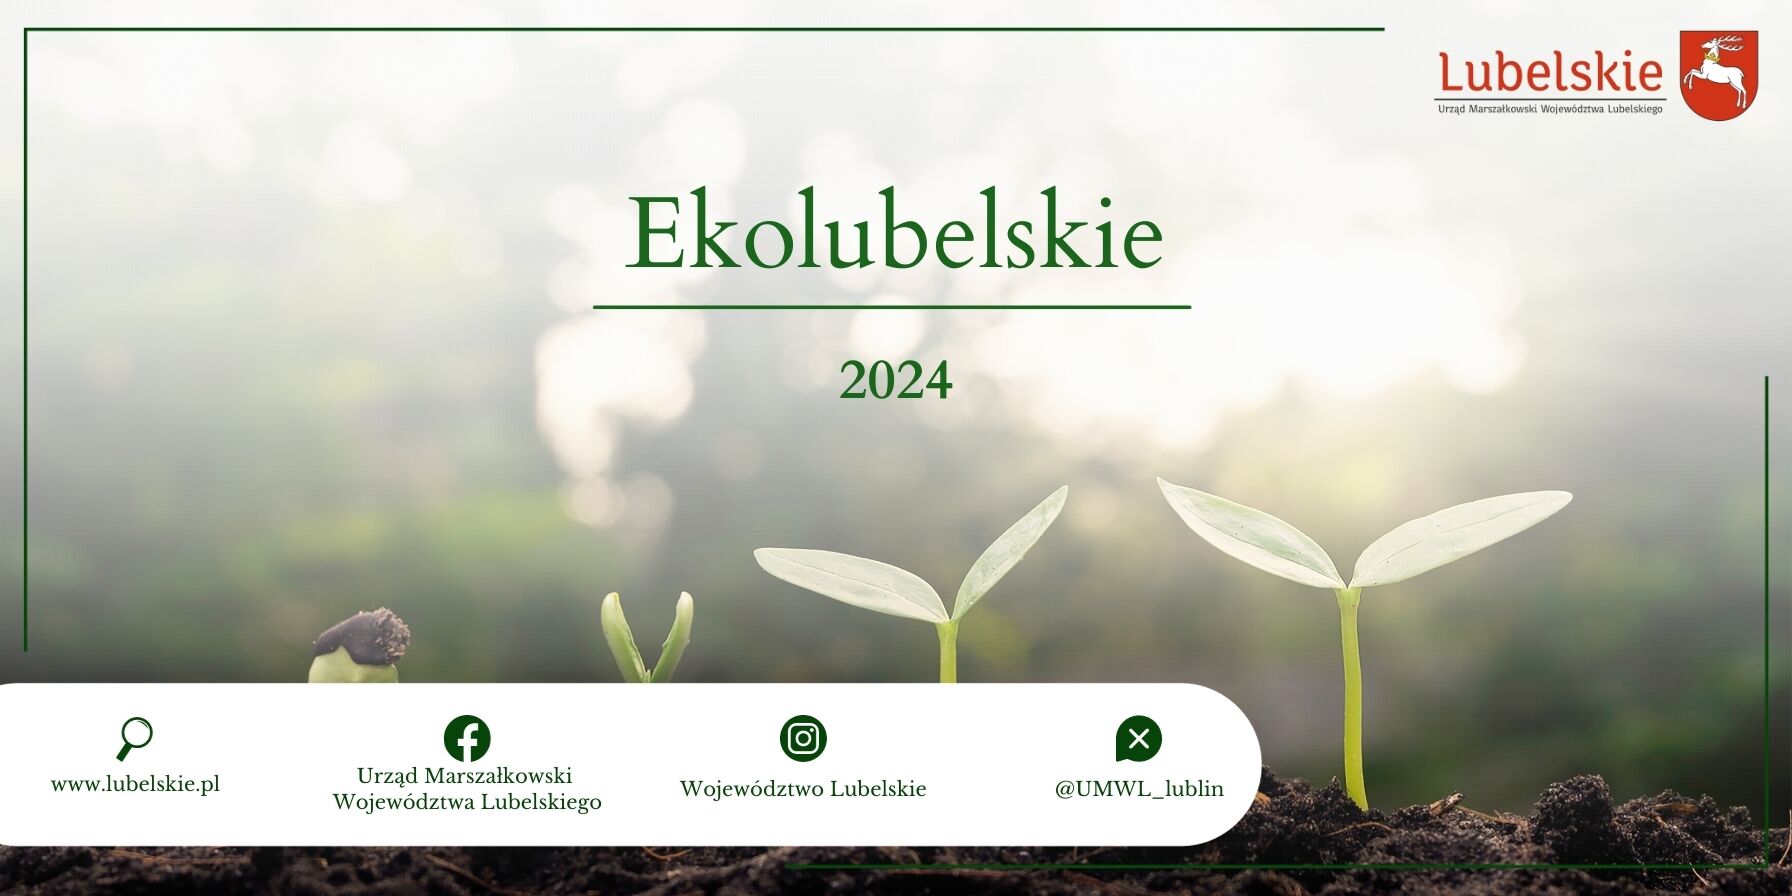 Baner promocyjny z napisem "Ekolubelskie 2024" przedstawiający małe roślinki i kiełkujące nasiona na tle rozmazanego zielonego lasu, symbolizujący wzrost i zrównoważony rozwój.